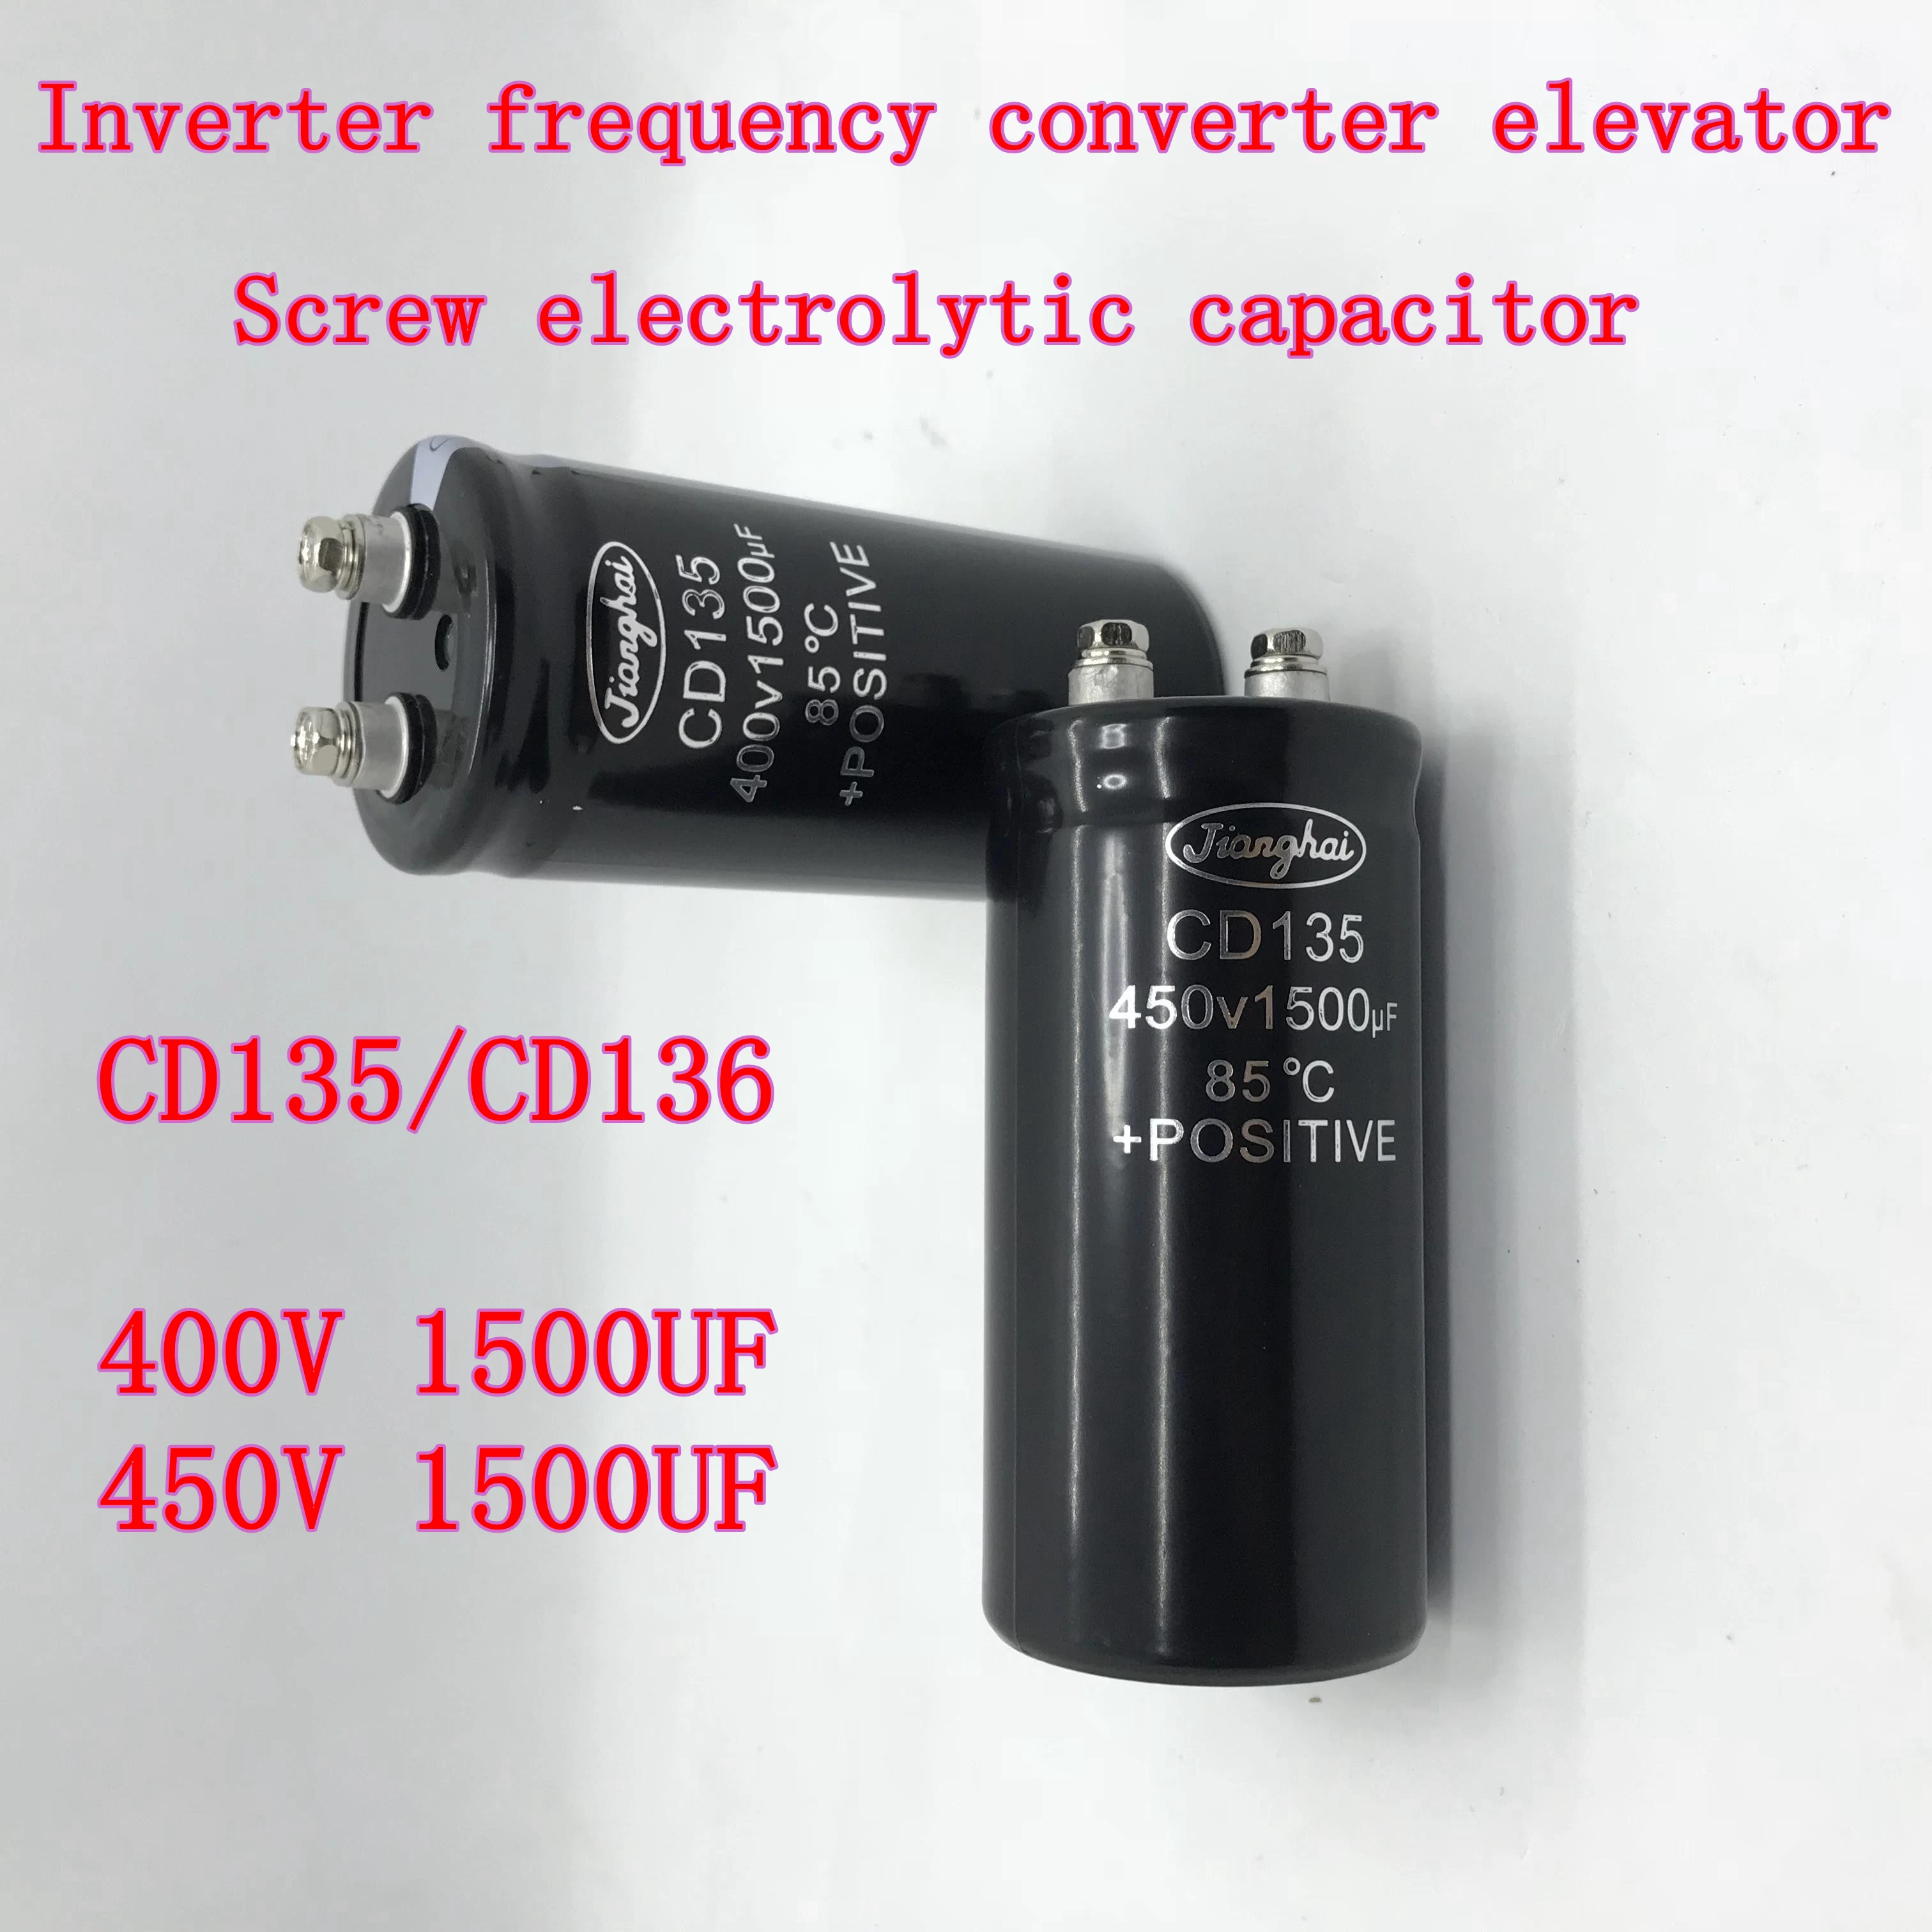 Винтовой электролитический конденсатор CD135 400V 1500UF Высоковольтный фильтр 450V 1500UF инверторный преобразователь частоты